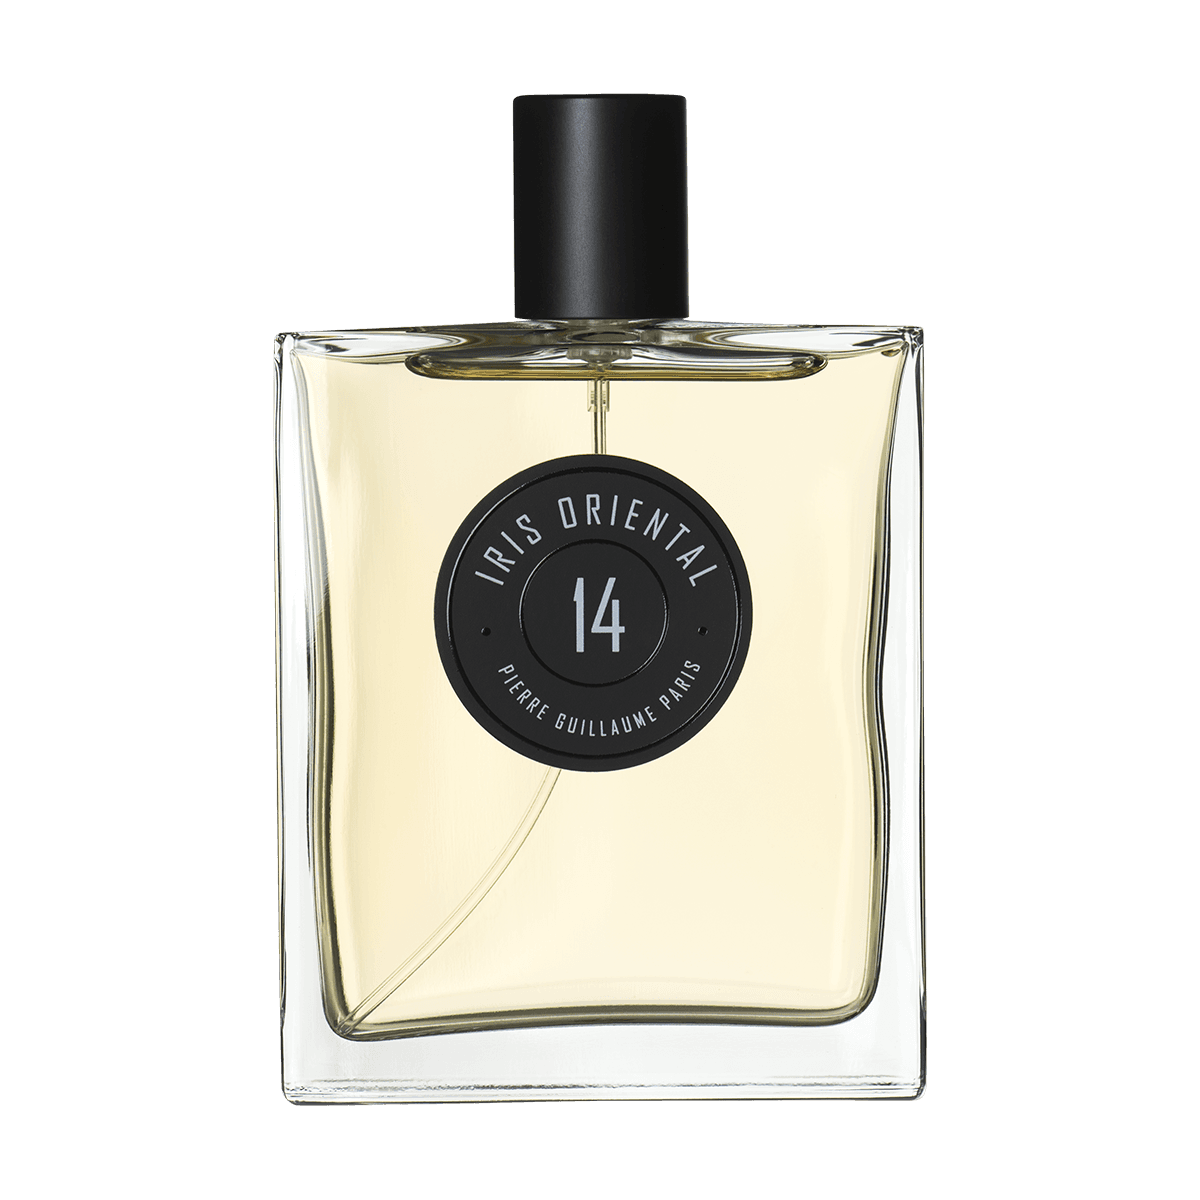 Pierre Guillaume Paris - Iris Oriental 100 ml eau de parfum | Perfume Lounge